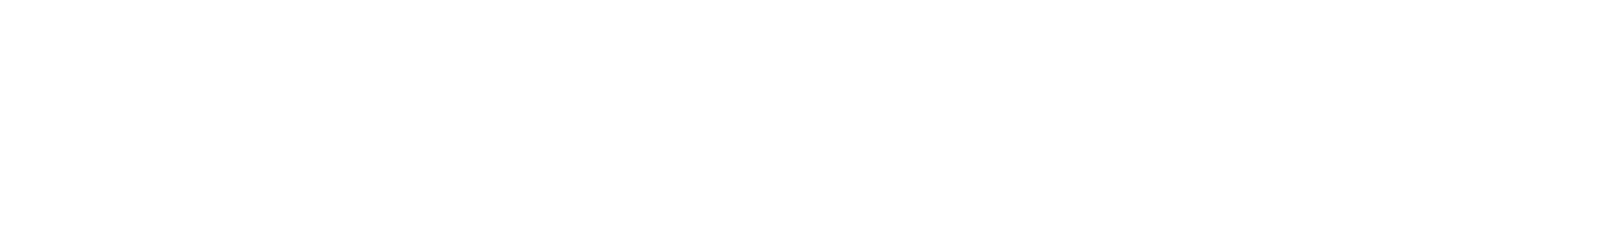 Glatfelter
 logo large for dark backgrounds (transparent PNG)